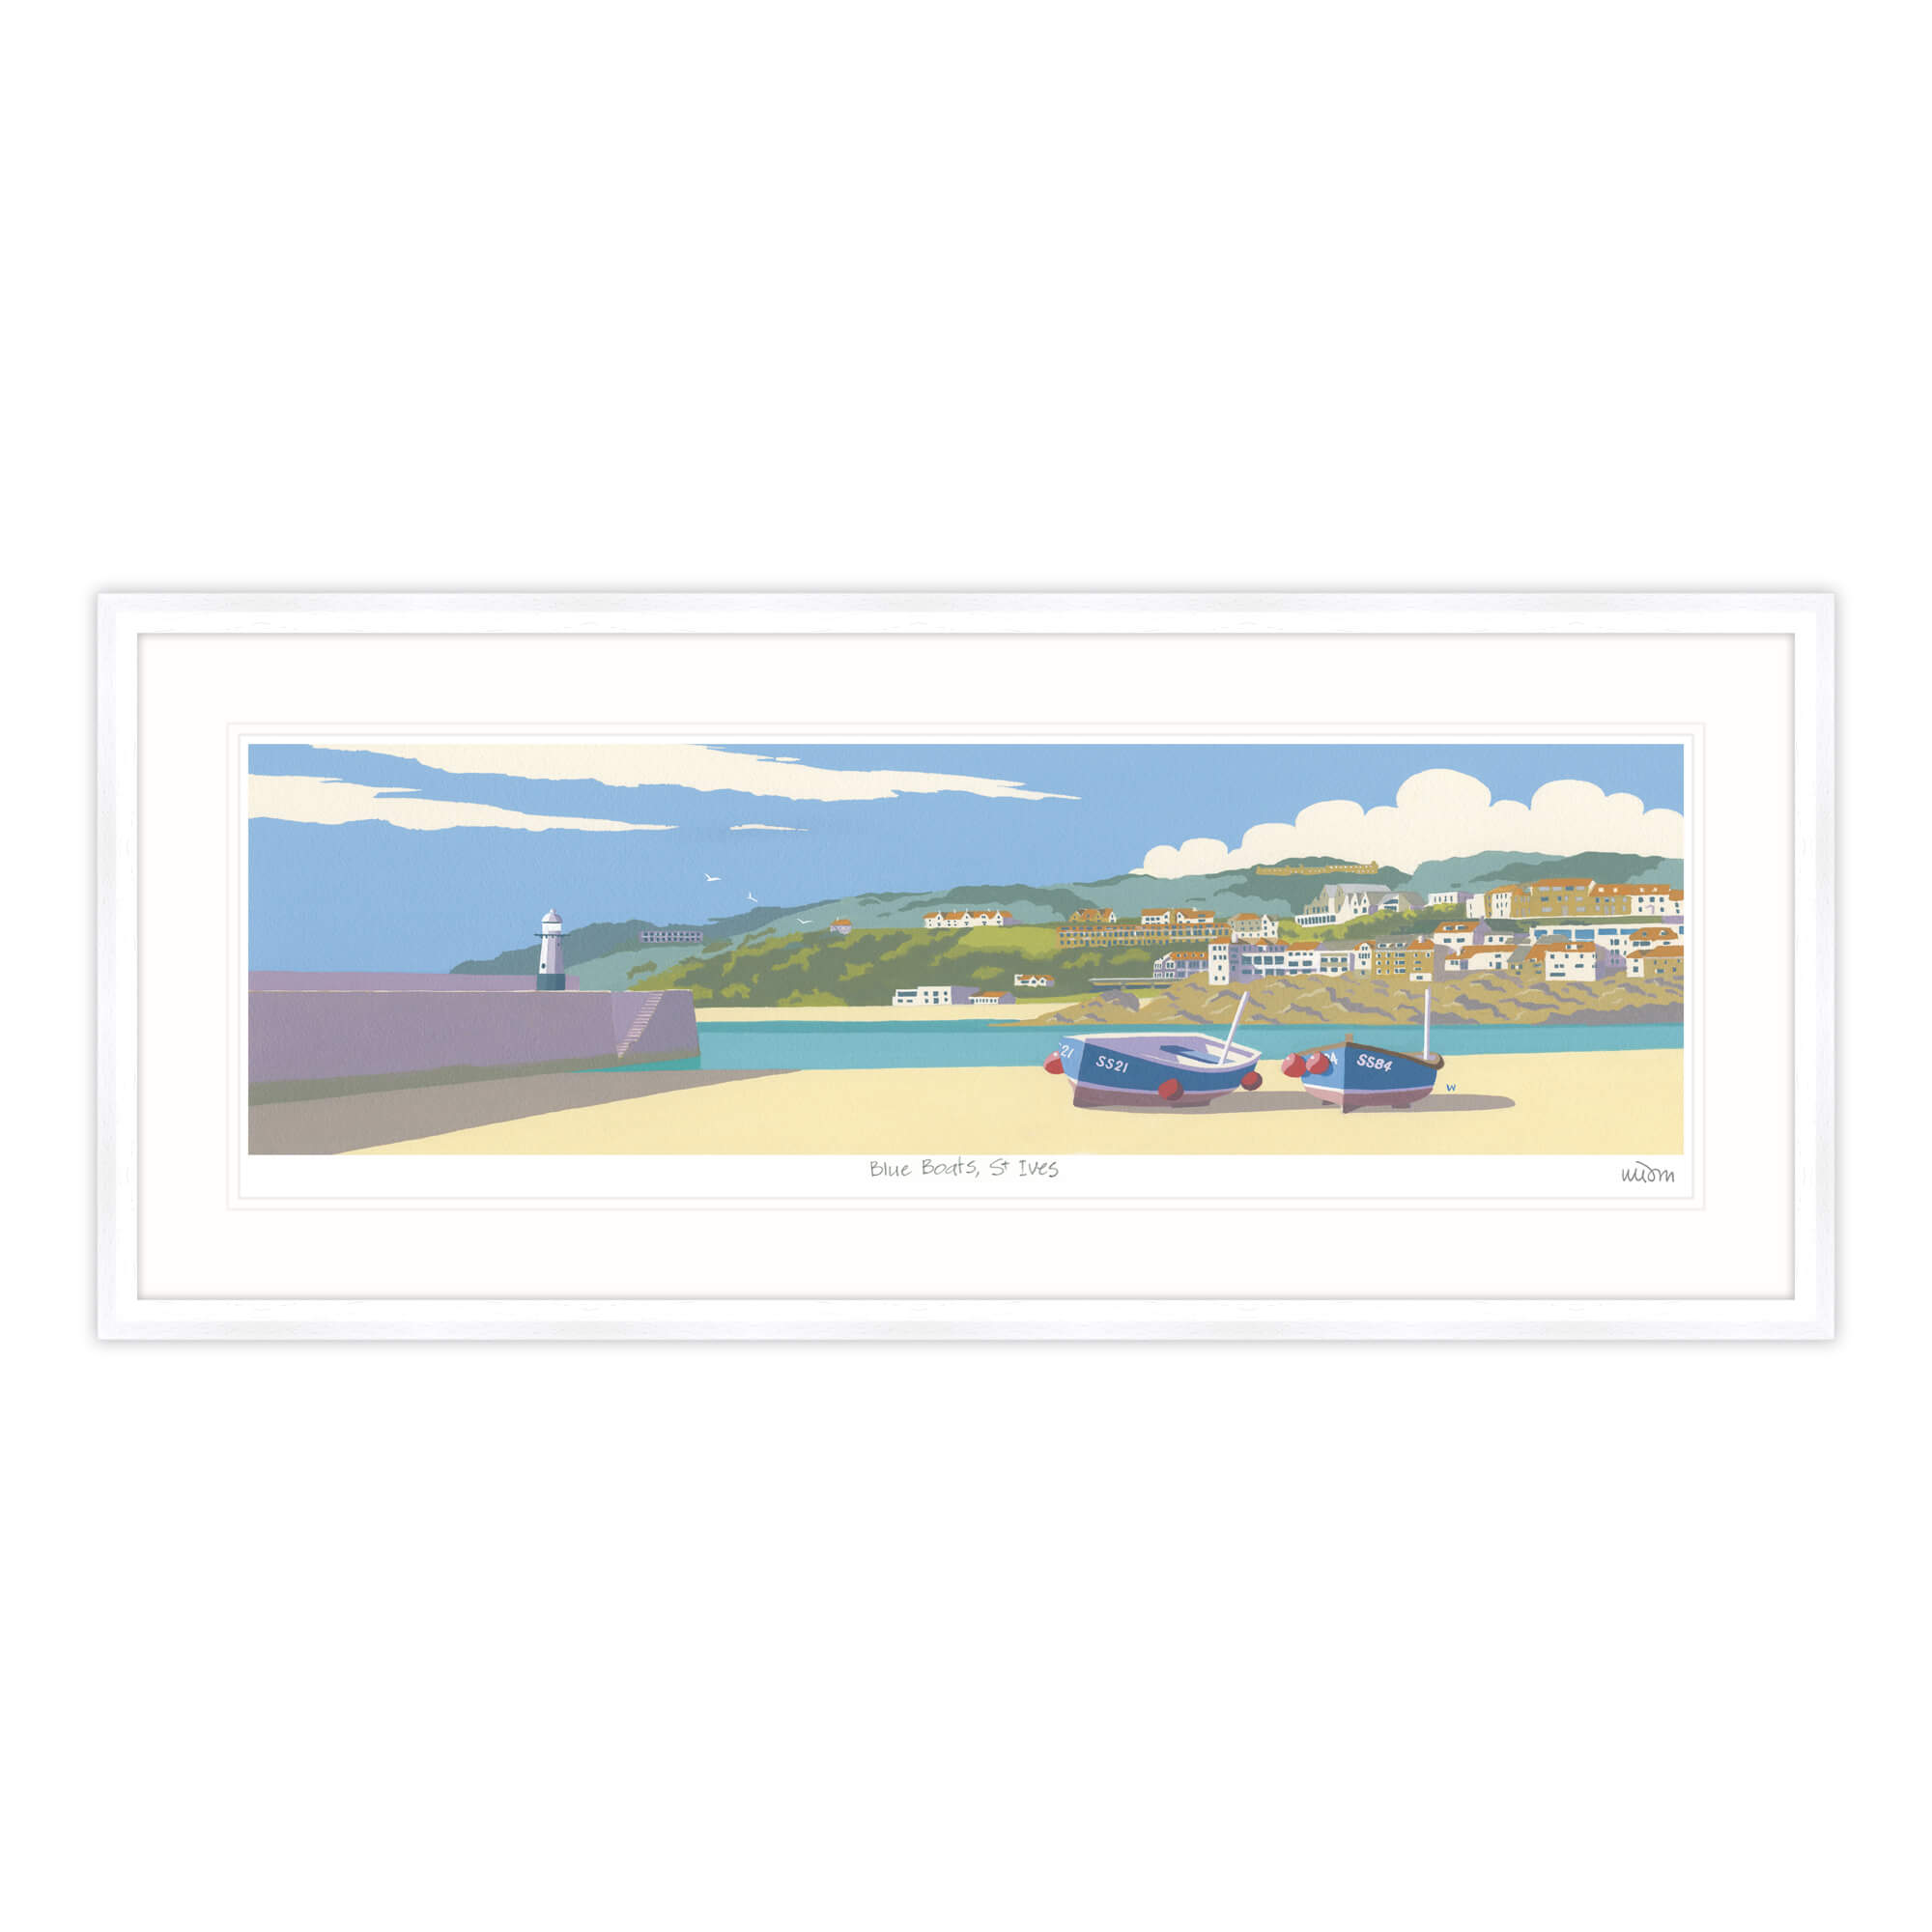 Blue Boats St Ives Framed Print